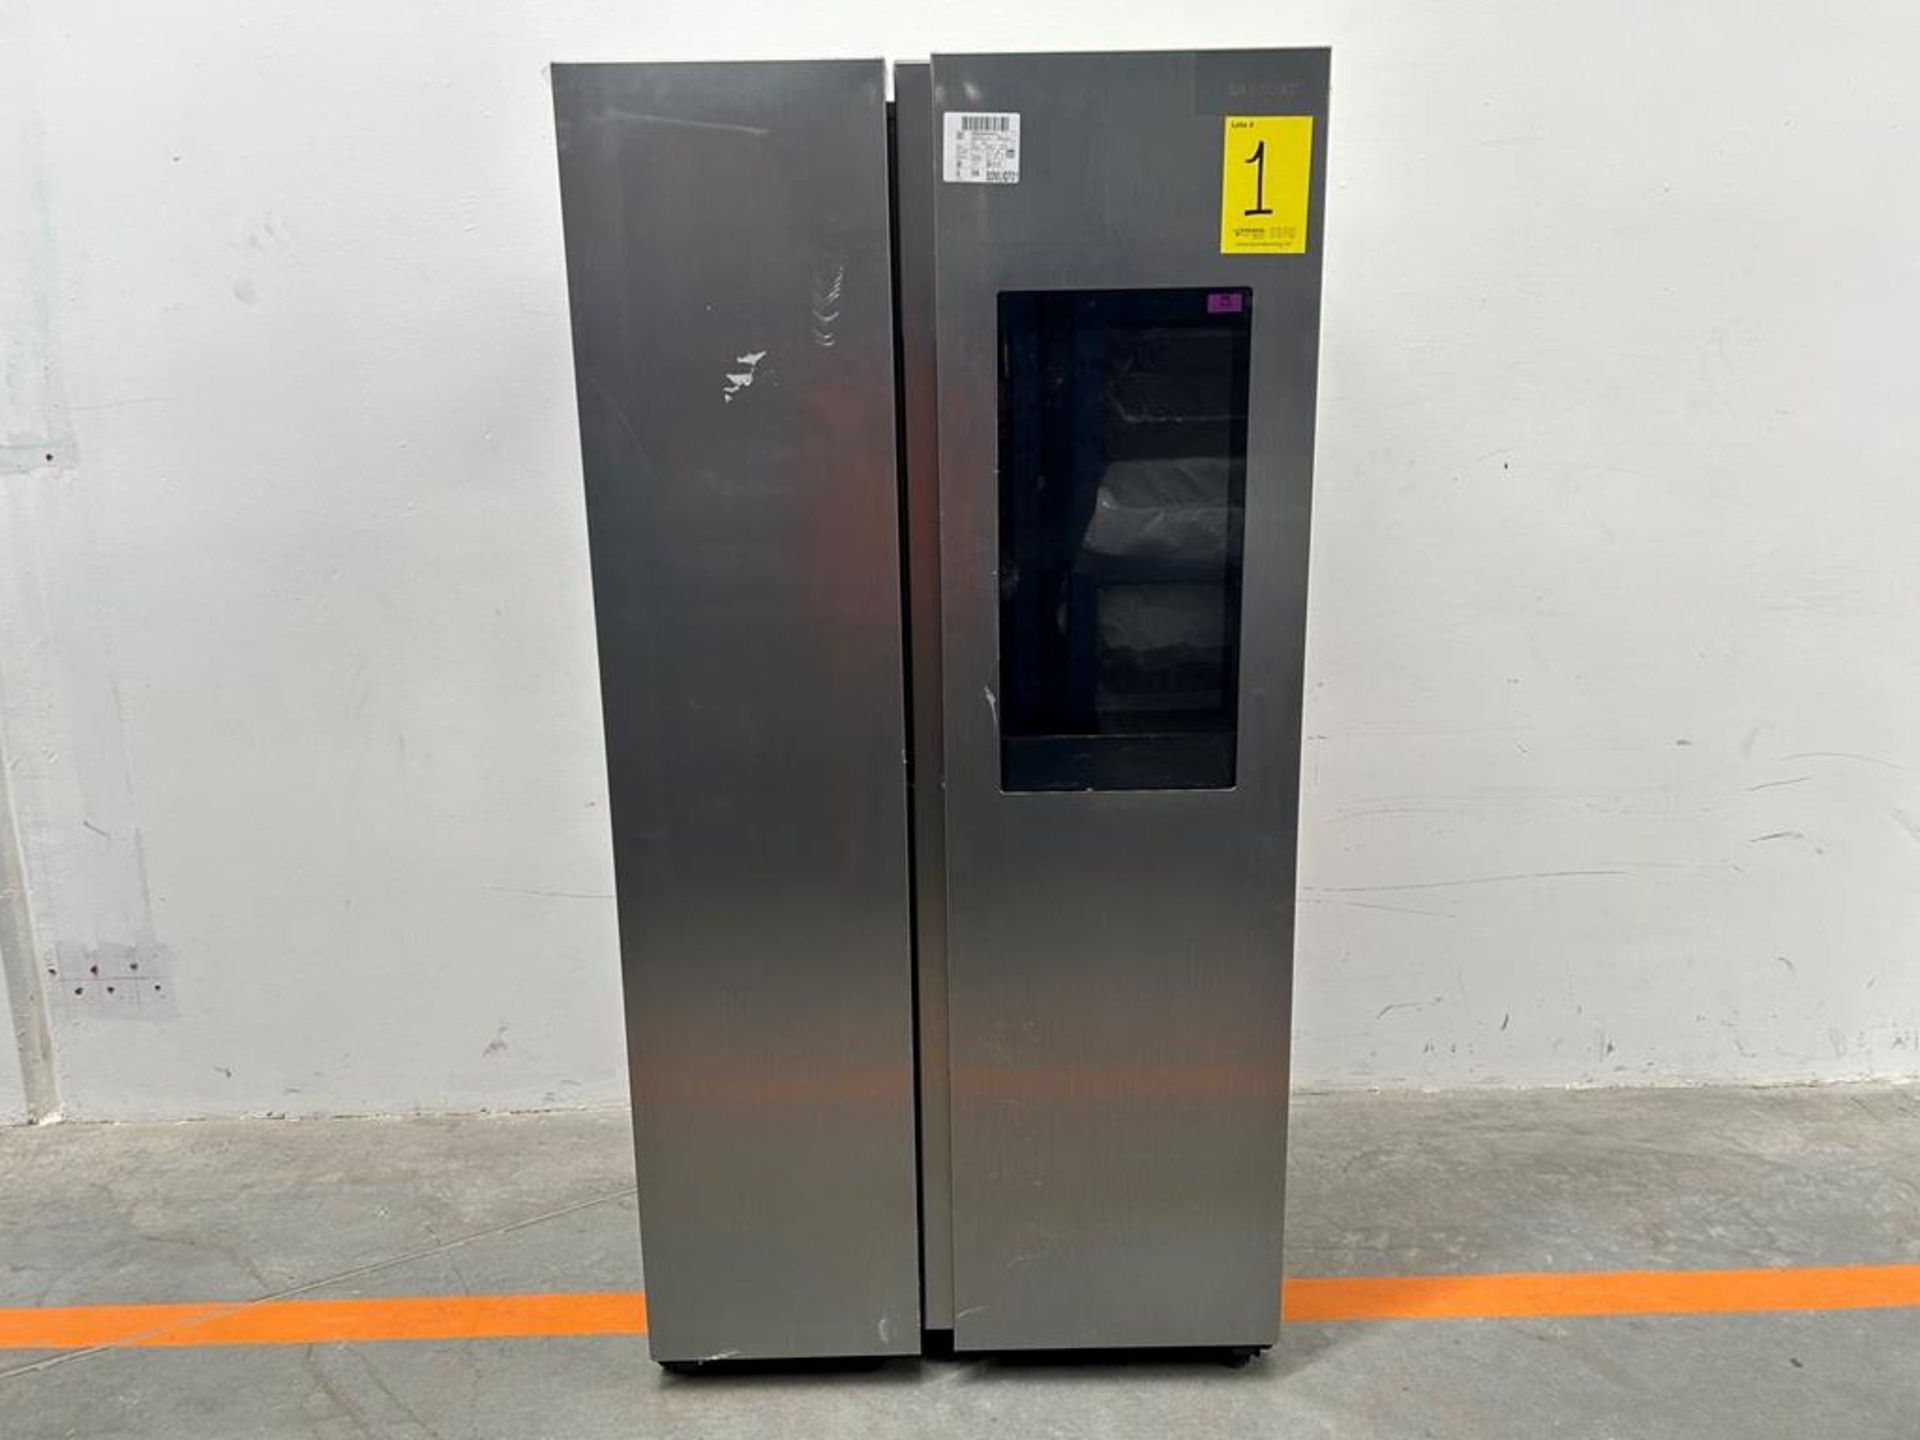 (NUEVO) Refrigerador Marca SAMSUNG, Modelo RS28A5F61S9, Serie 000015V, Color GRIS